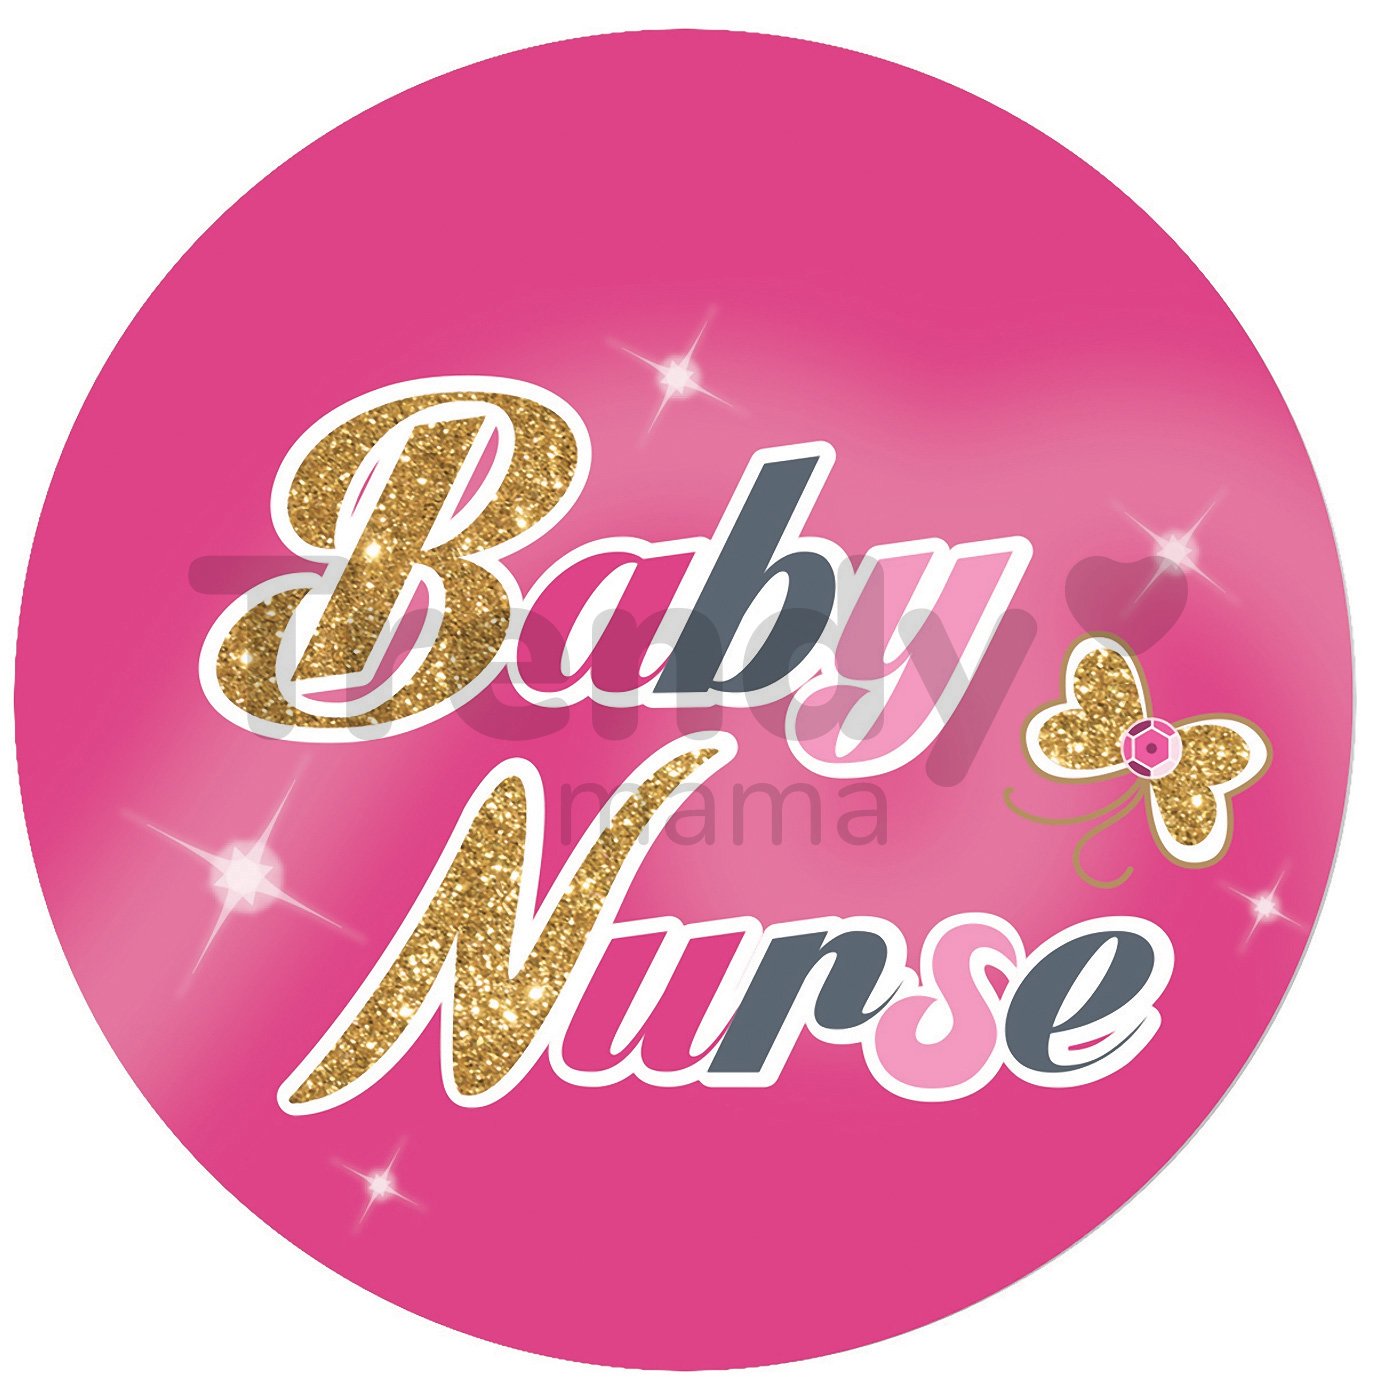 Prebaľovací vozík a postieľka pre bábiku Baby Nurse Smoby